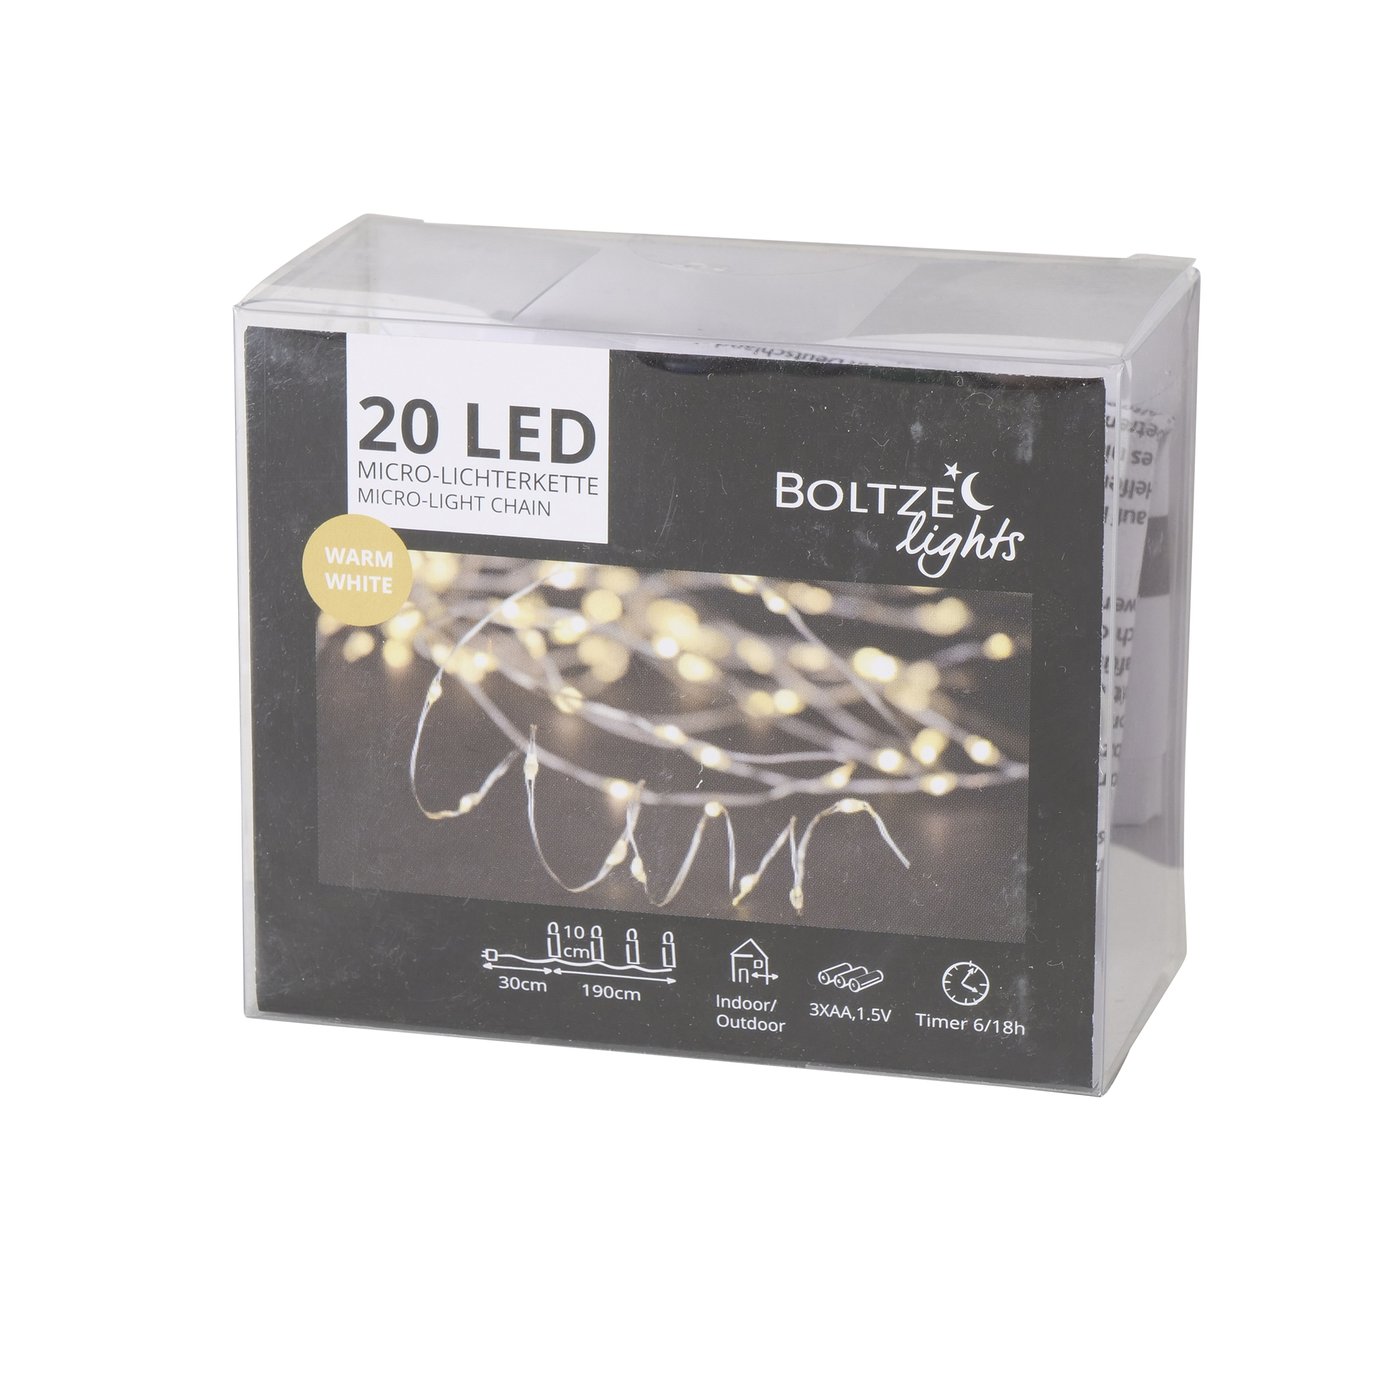 20er Micro LED Lichterkette warmweiß mit Timer, Drahtlichterkette, 2001256, 4020607750319, Boltze